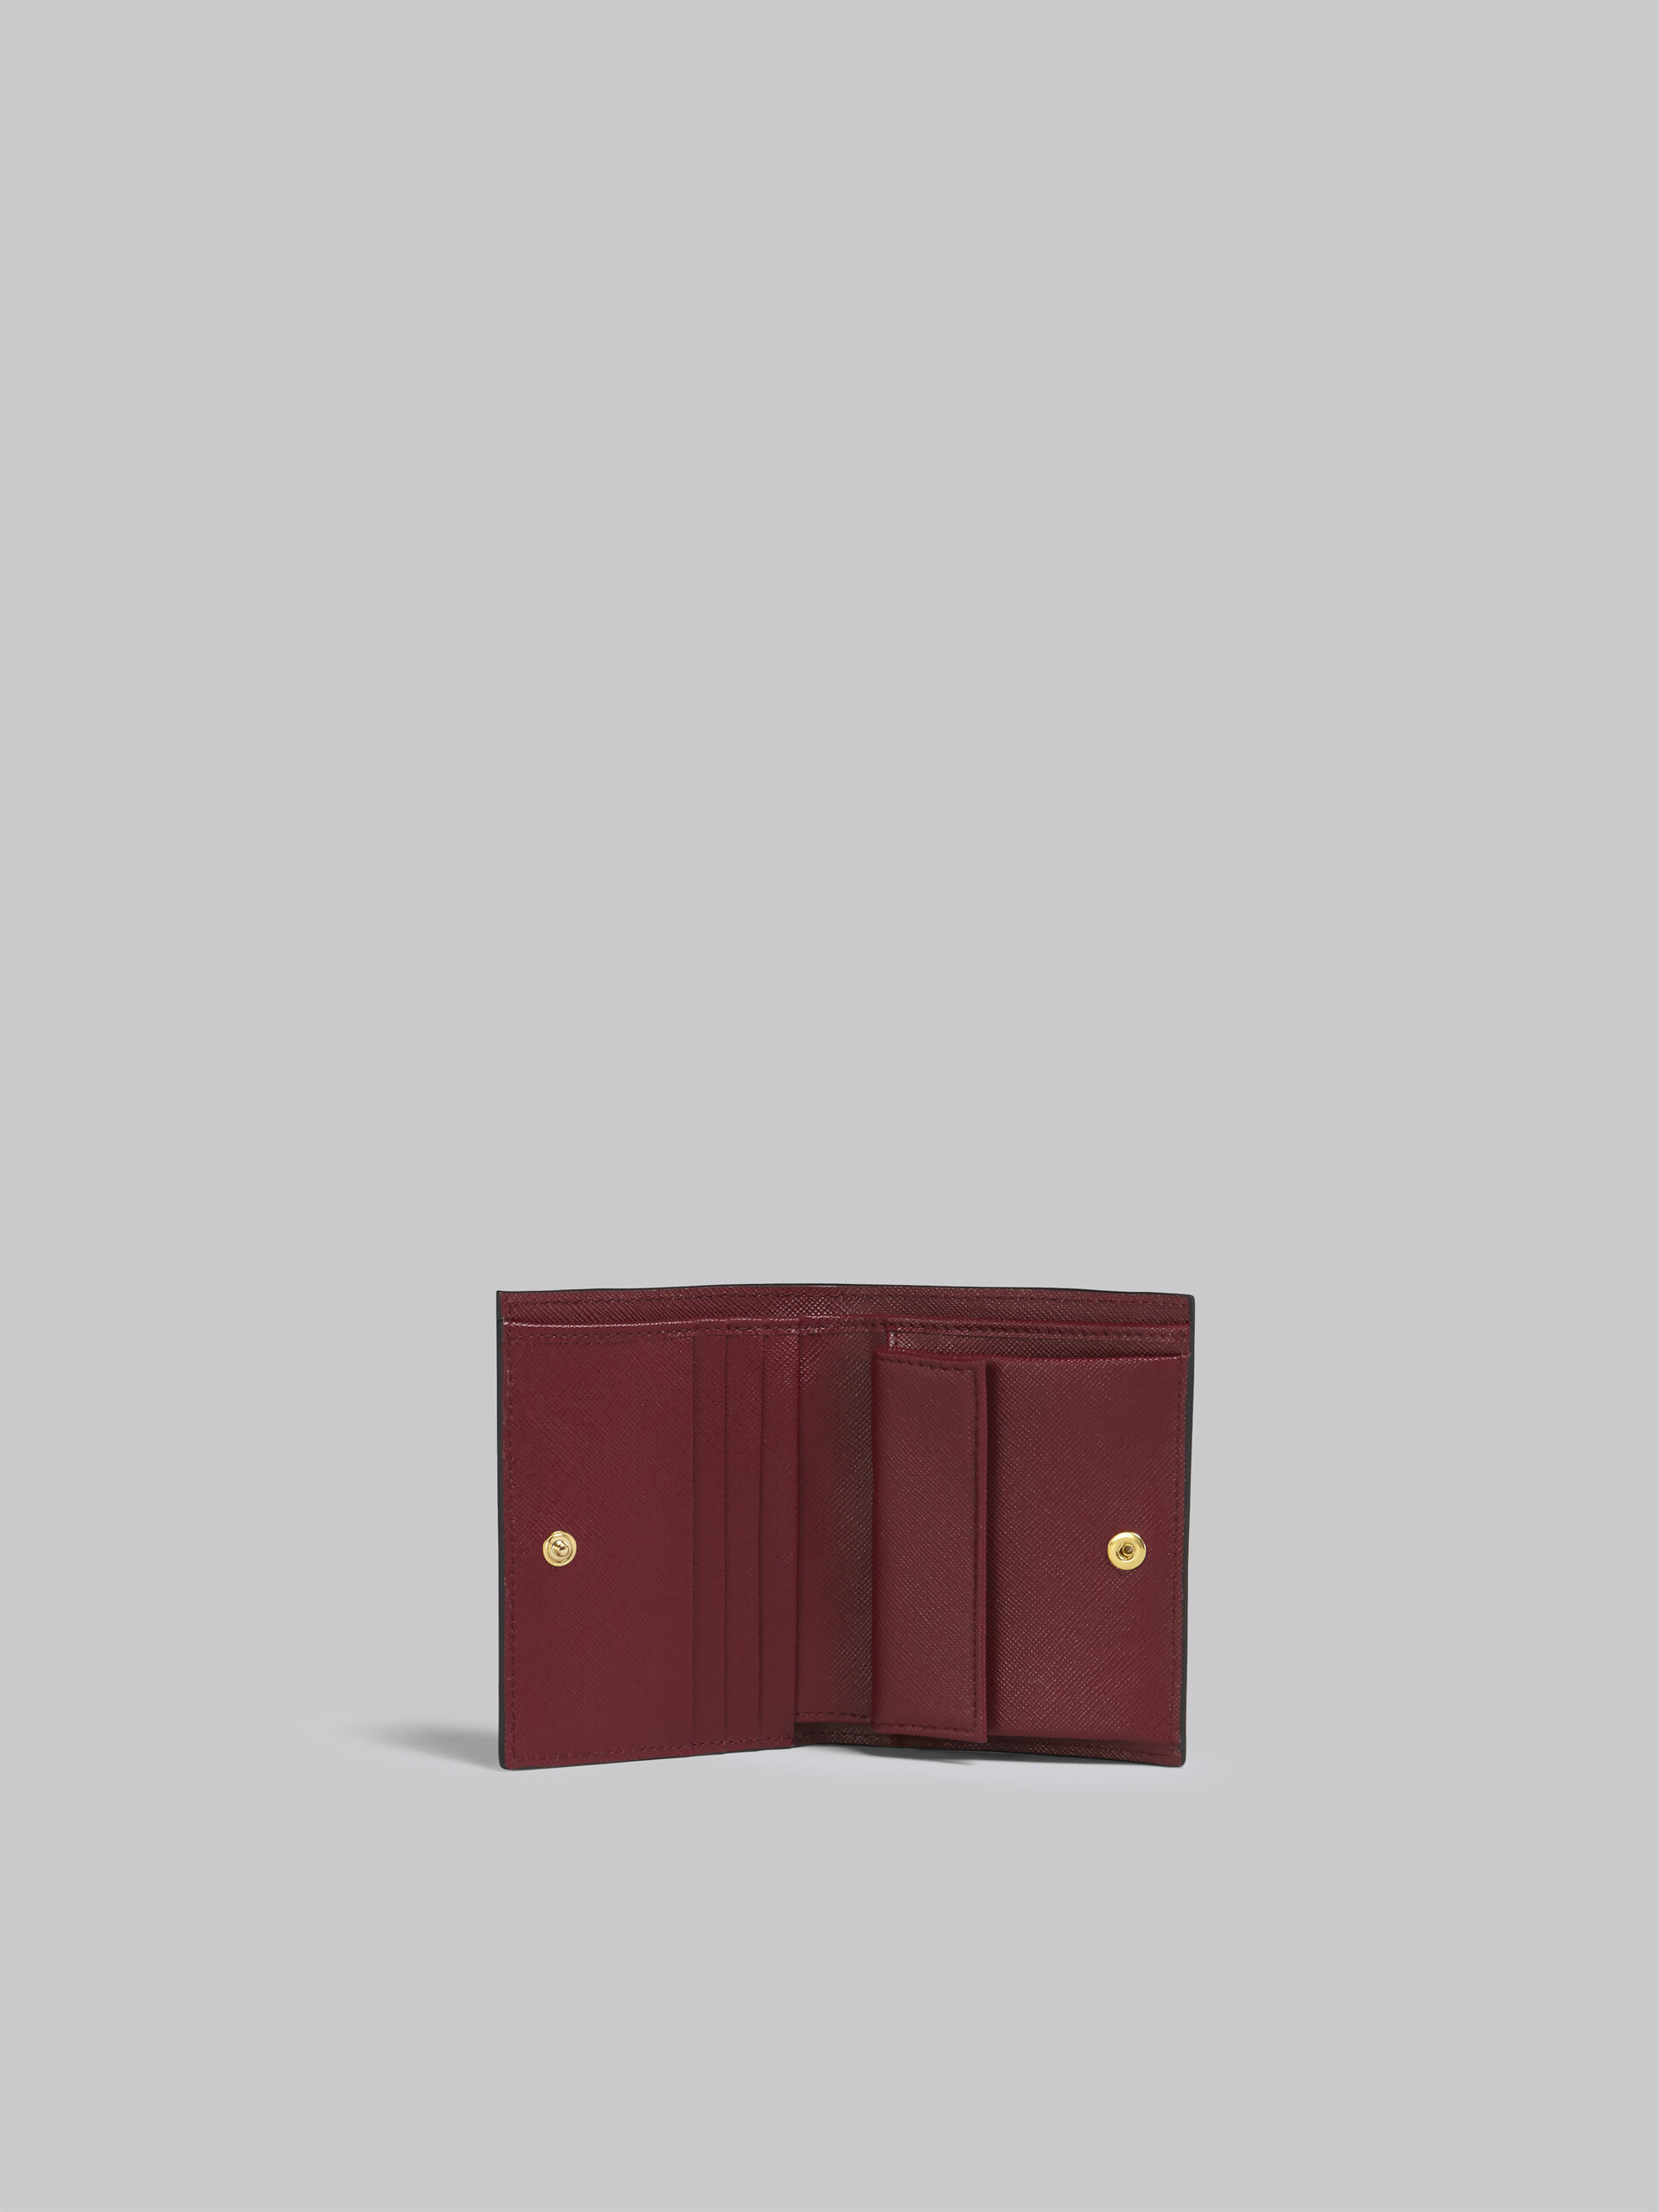 ブルー グレー レッド サフィアーノレザー製 二つ折りウォレット - 財布 - Image 2